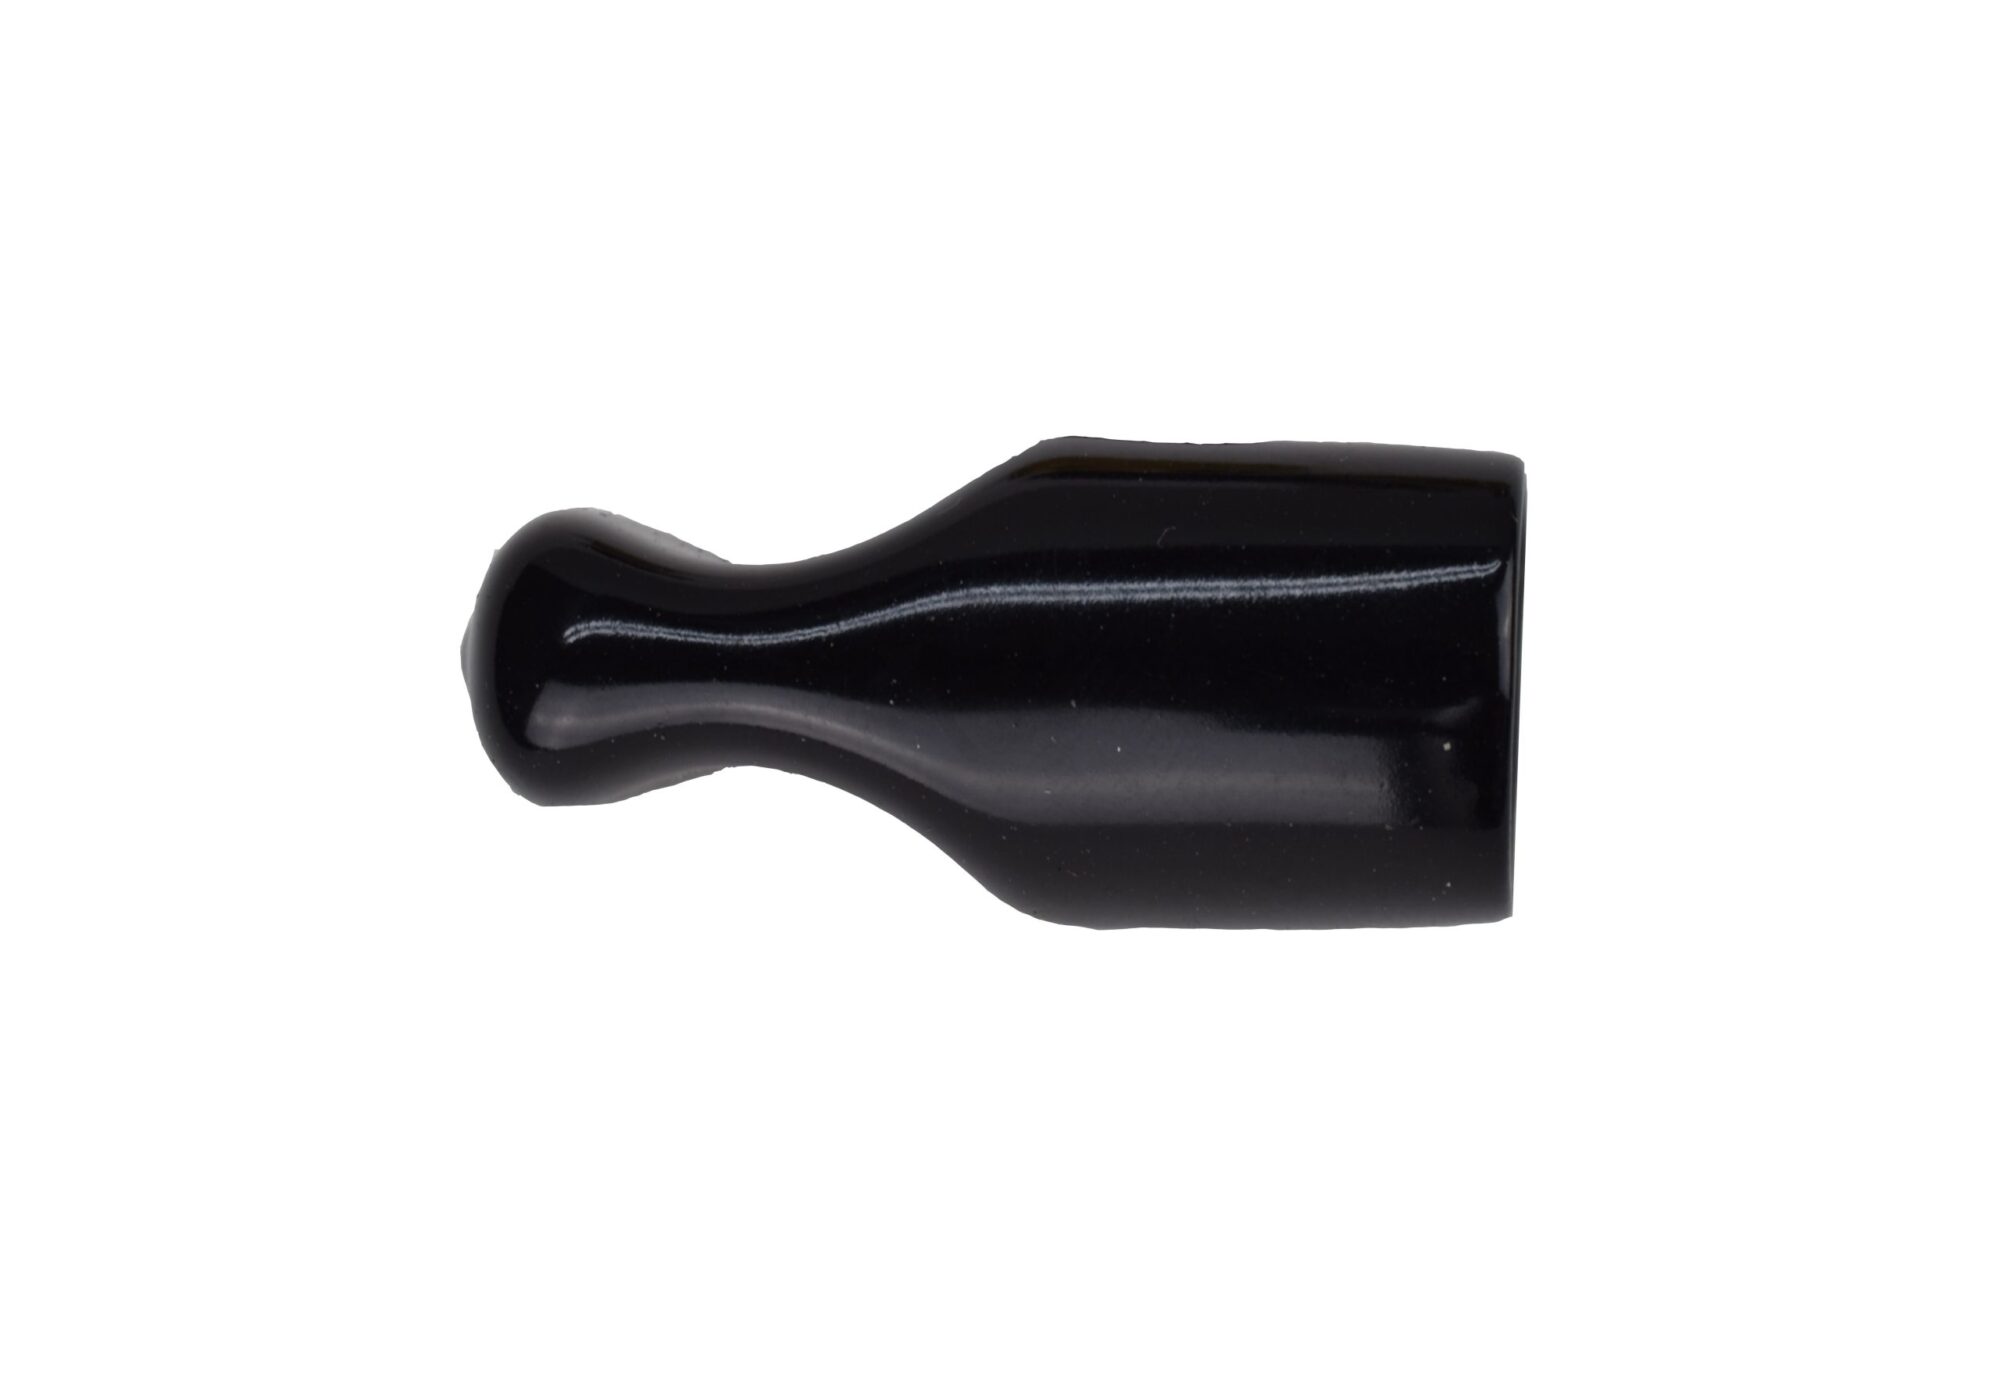 SE625 Faucet Spout Cover - Black Plastic